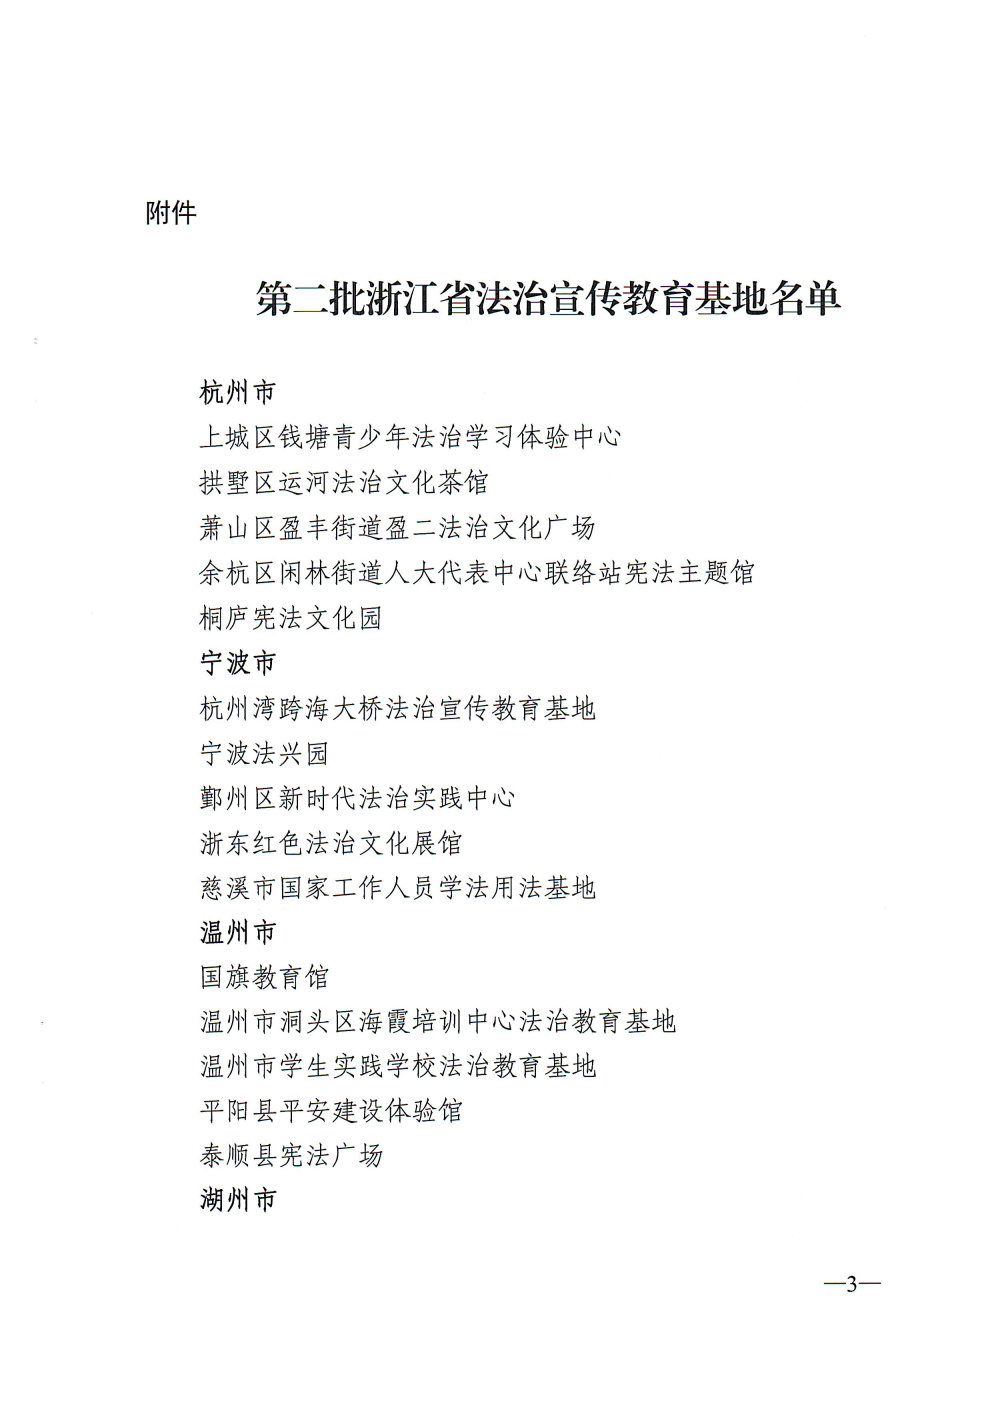 关于命名第二批浙江省法治宣传教育基地的通知_Page3_Image1.jpg